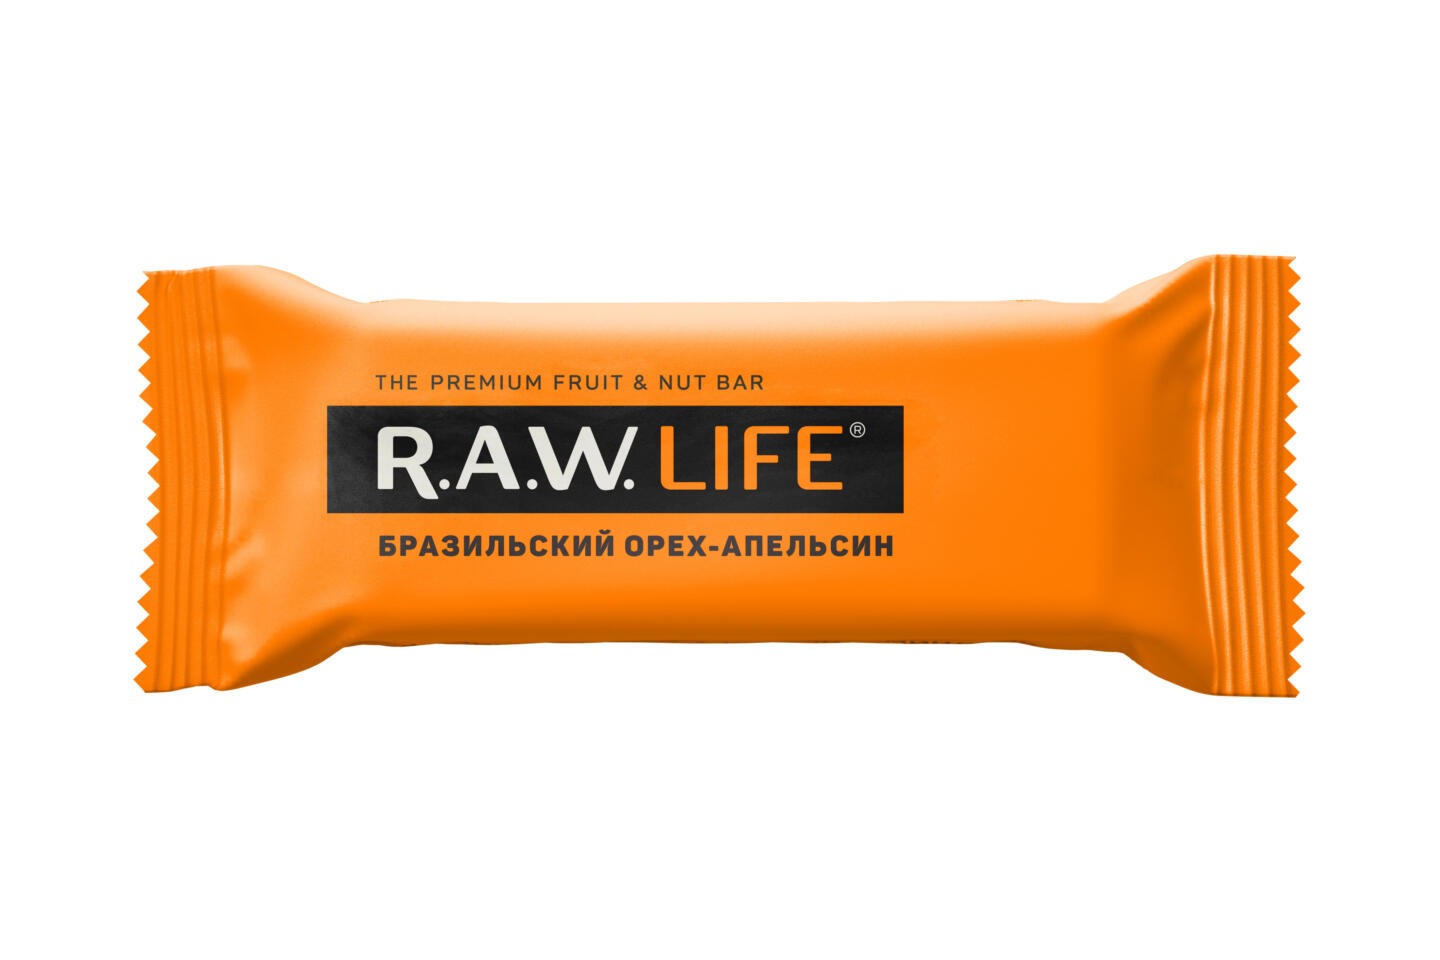 Компания R.A.W. LIFE выпустила новый батончик «Бразильский орех — апельсин». Изображение номер 1